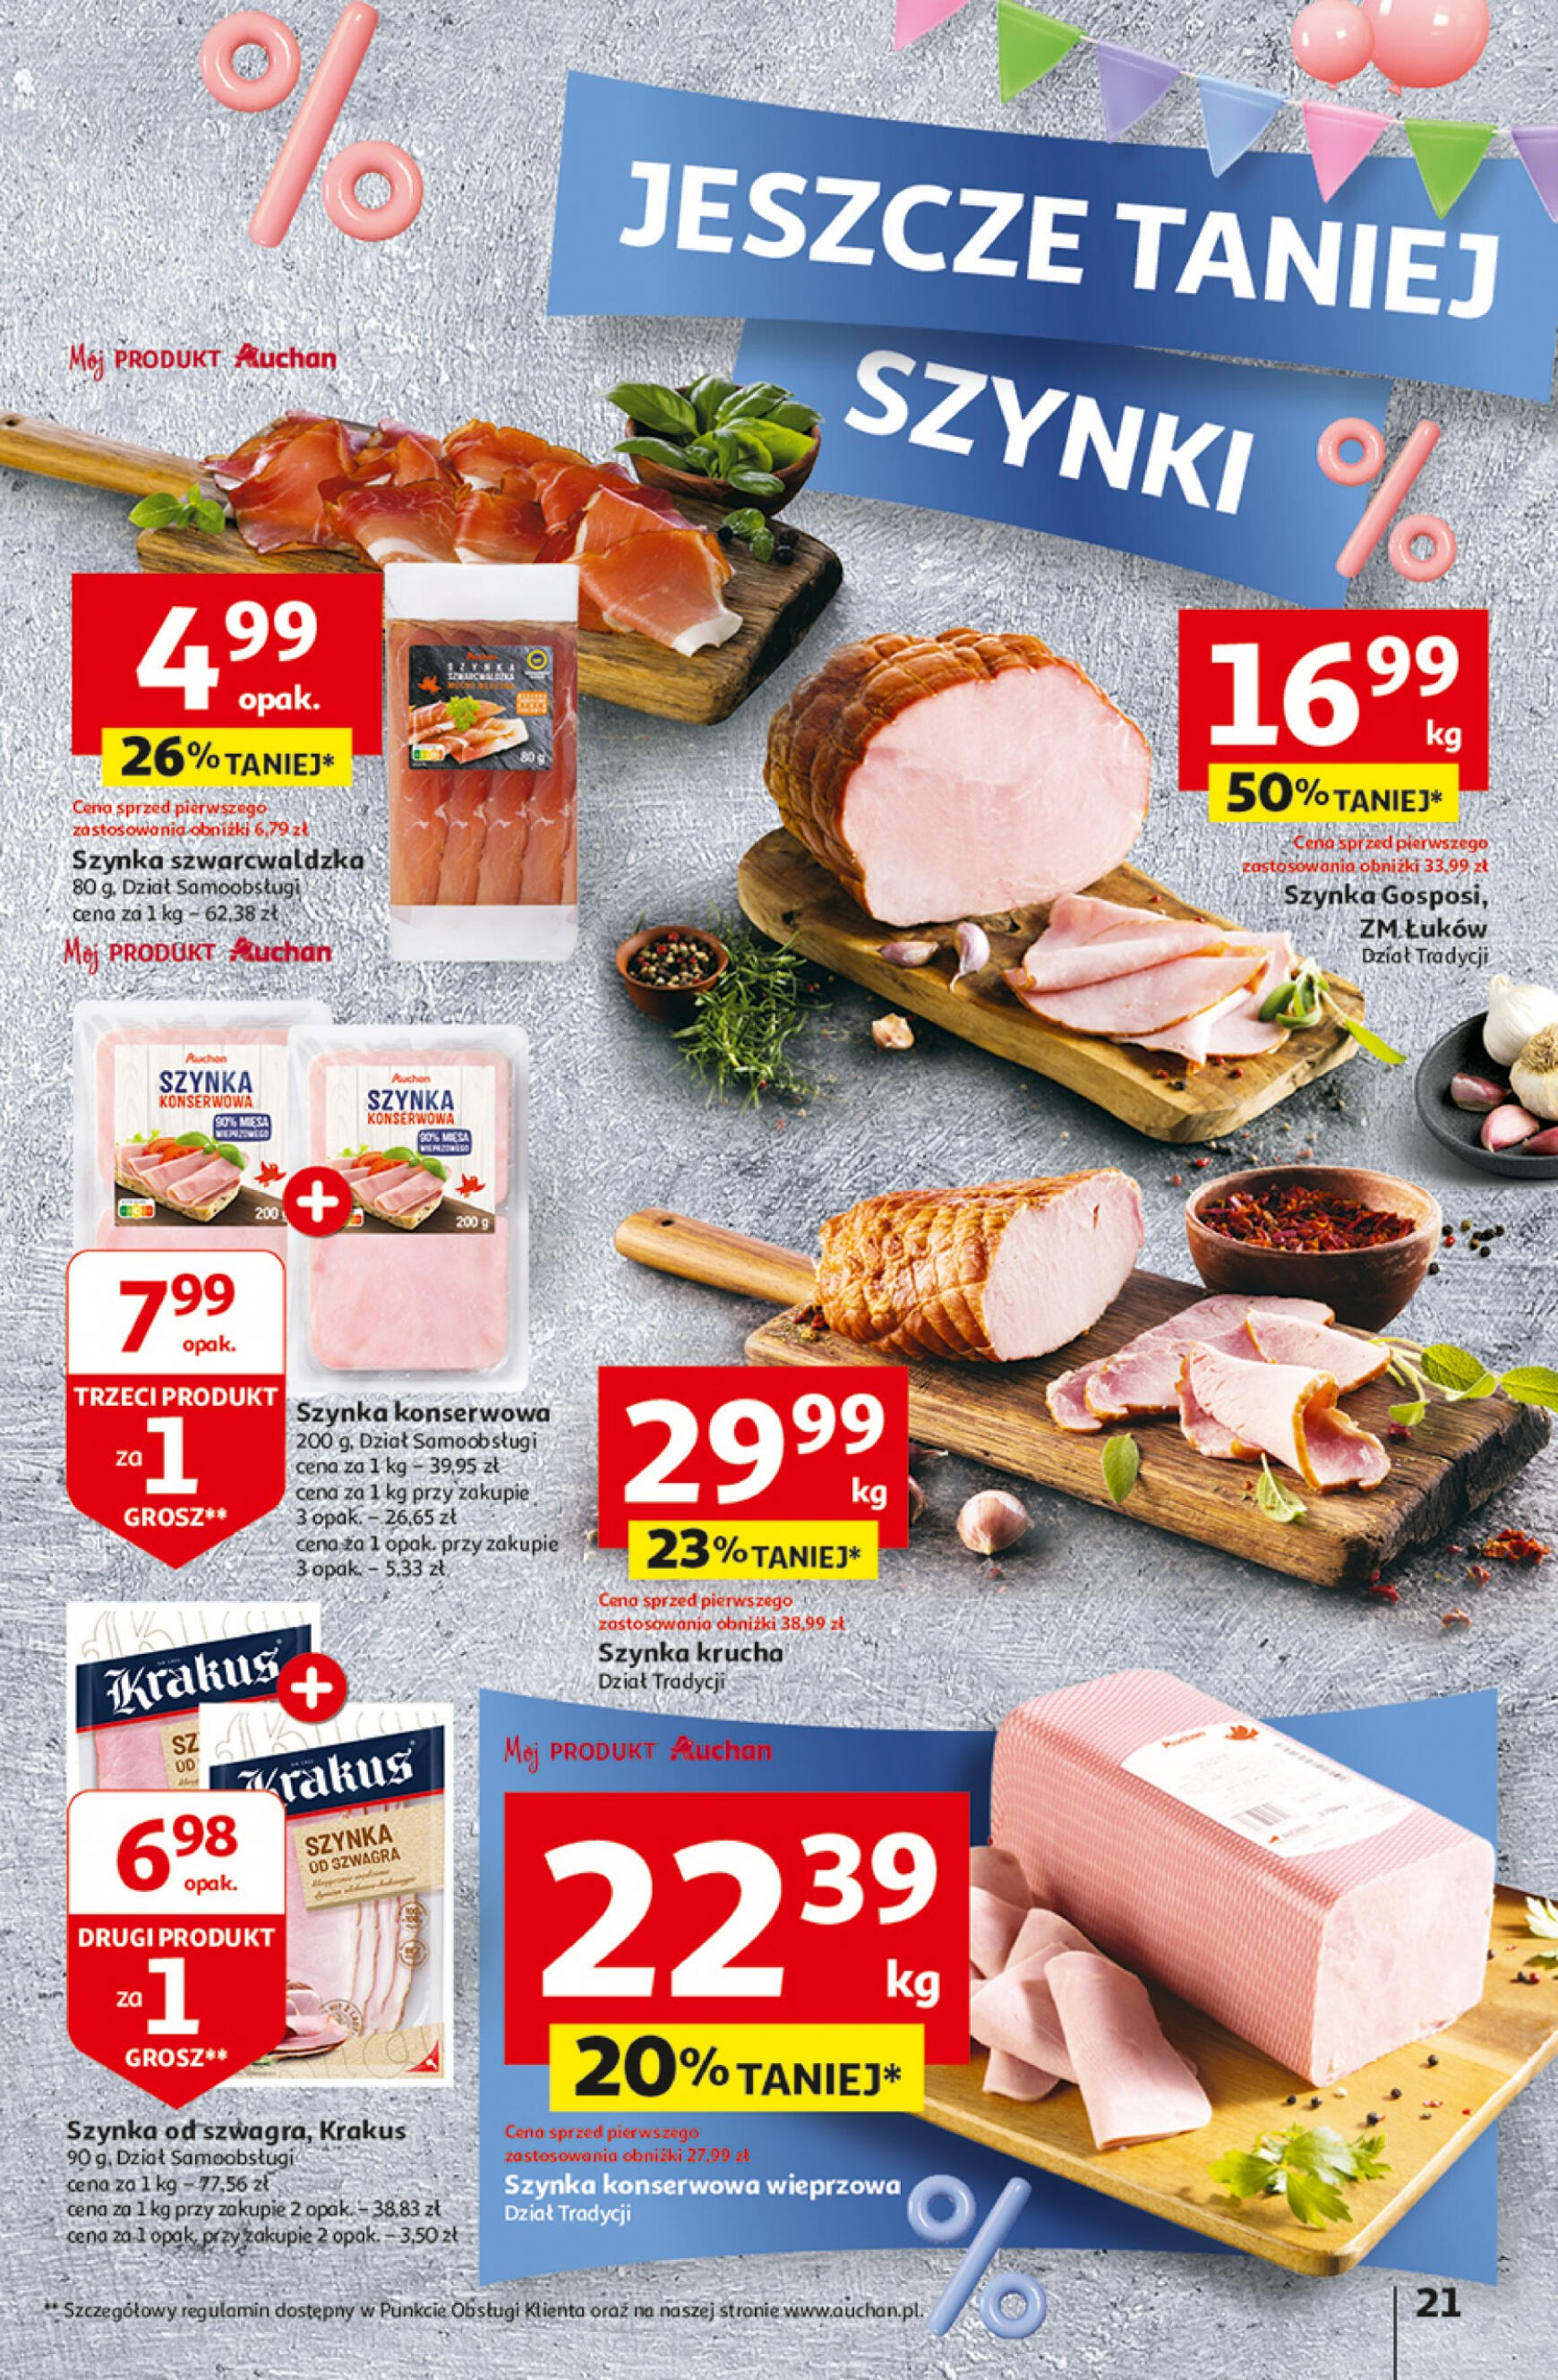 auchan - Hipermarket Auchan - Gazetka Jeszcze taniej na urodziny gazetka aktualna ważna od 25.04. - 30.04. - page: 21